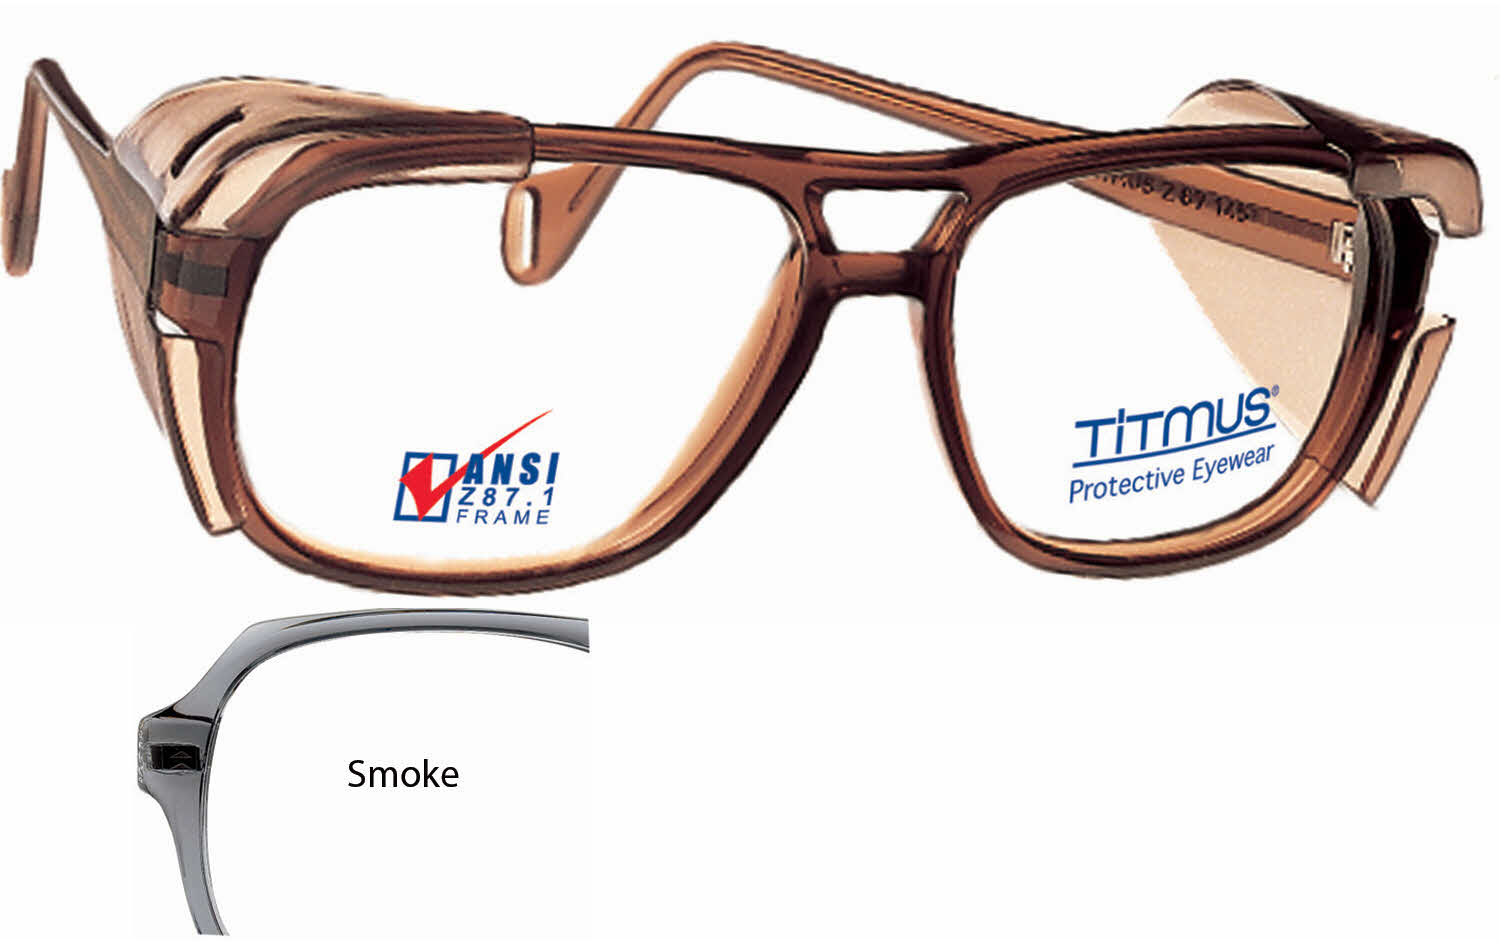 Titmus SC 901 Eyeglasses